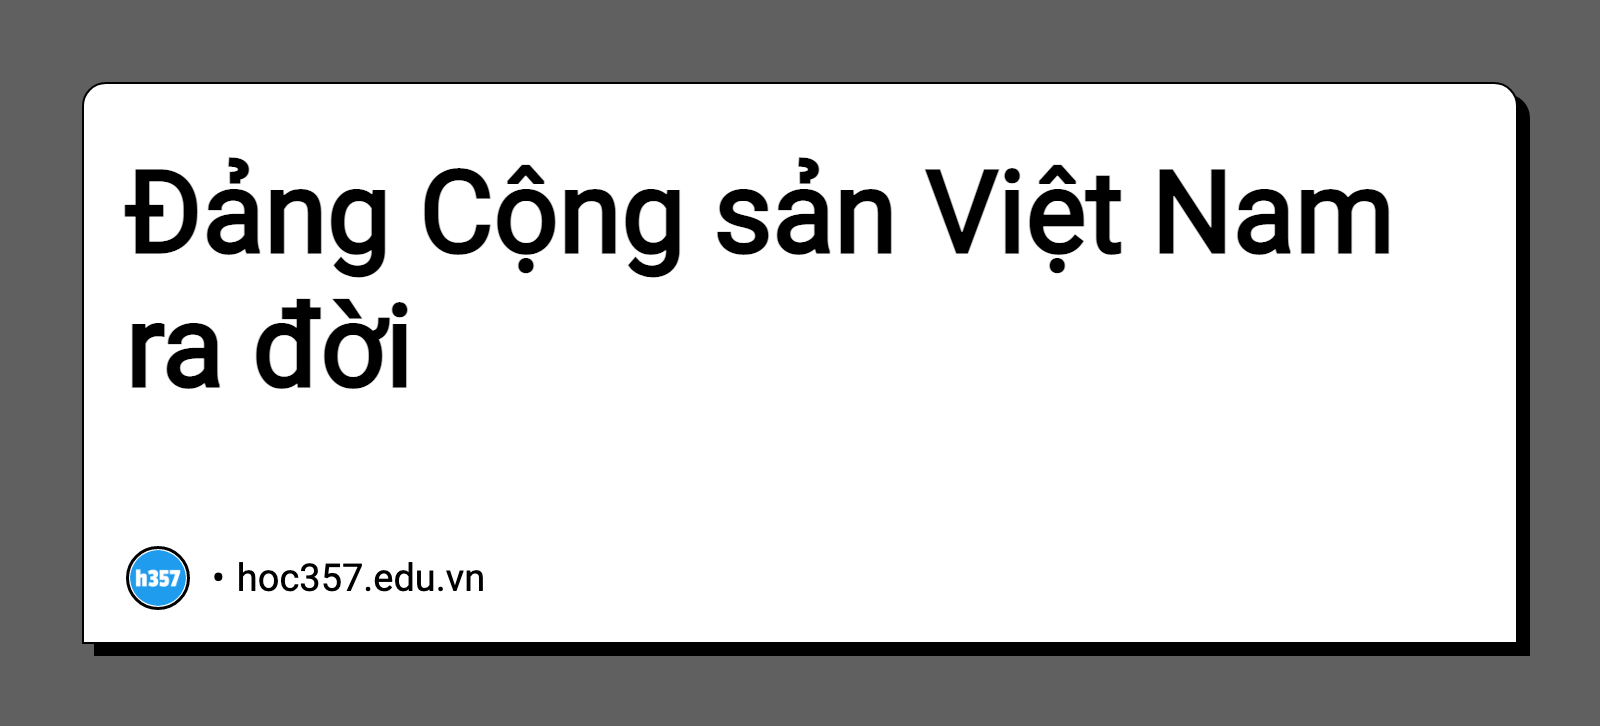 Hình minh họa Đảng Cộng sản Việt Nam ra đời